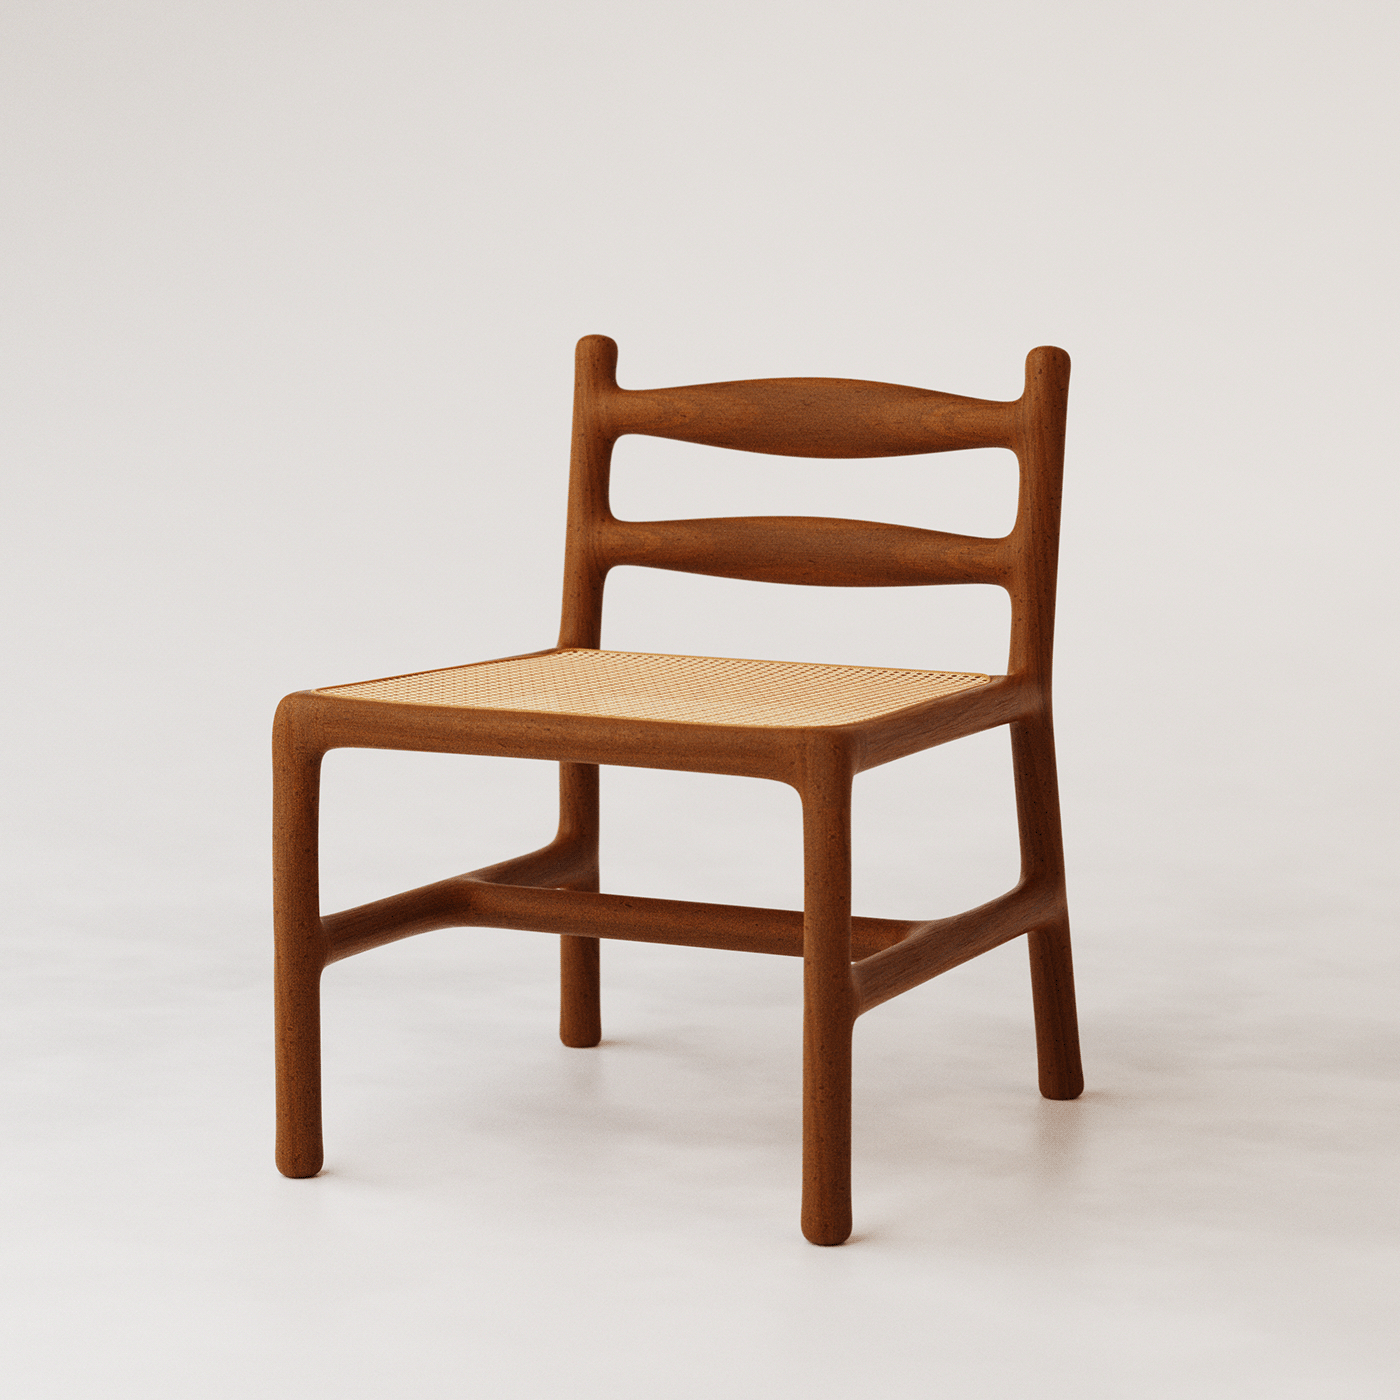 Loungechair chair wood architecture Render interior design  furniture design  furniture modern